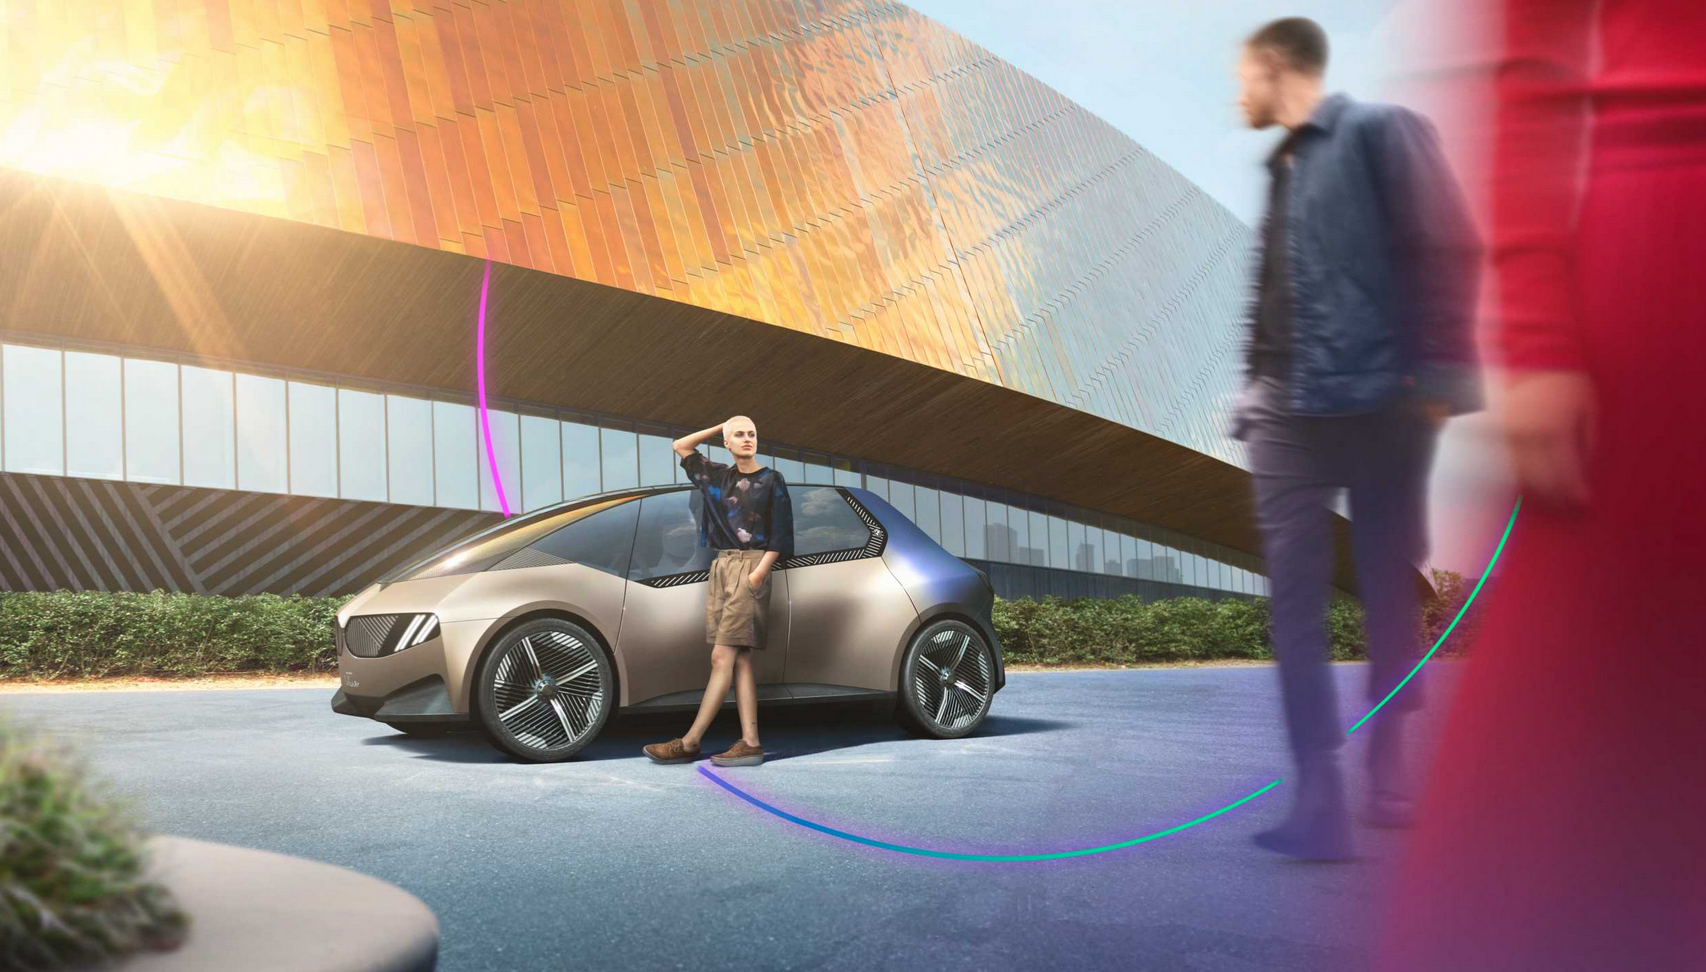 BMW s'engage dans une démarche circulaire à l'occasion du salon IAA Mobility de Munich